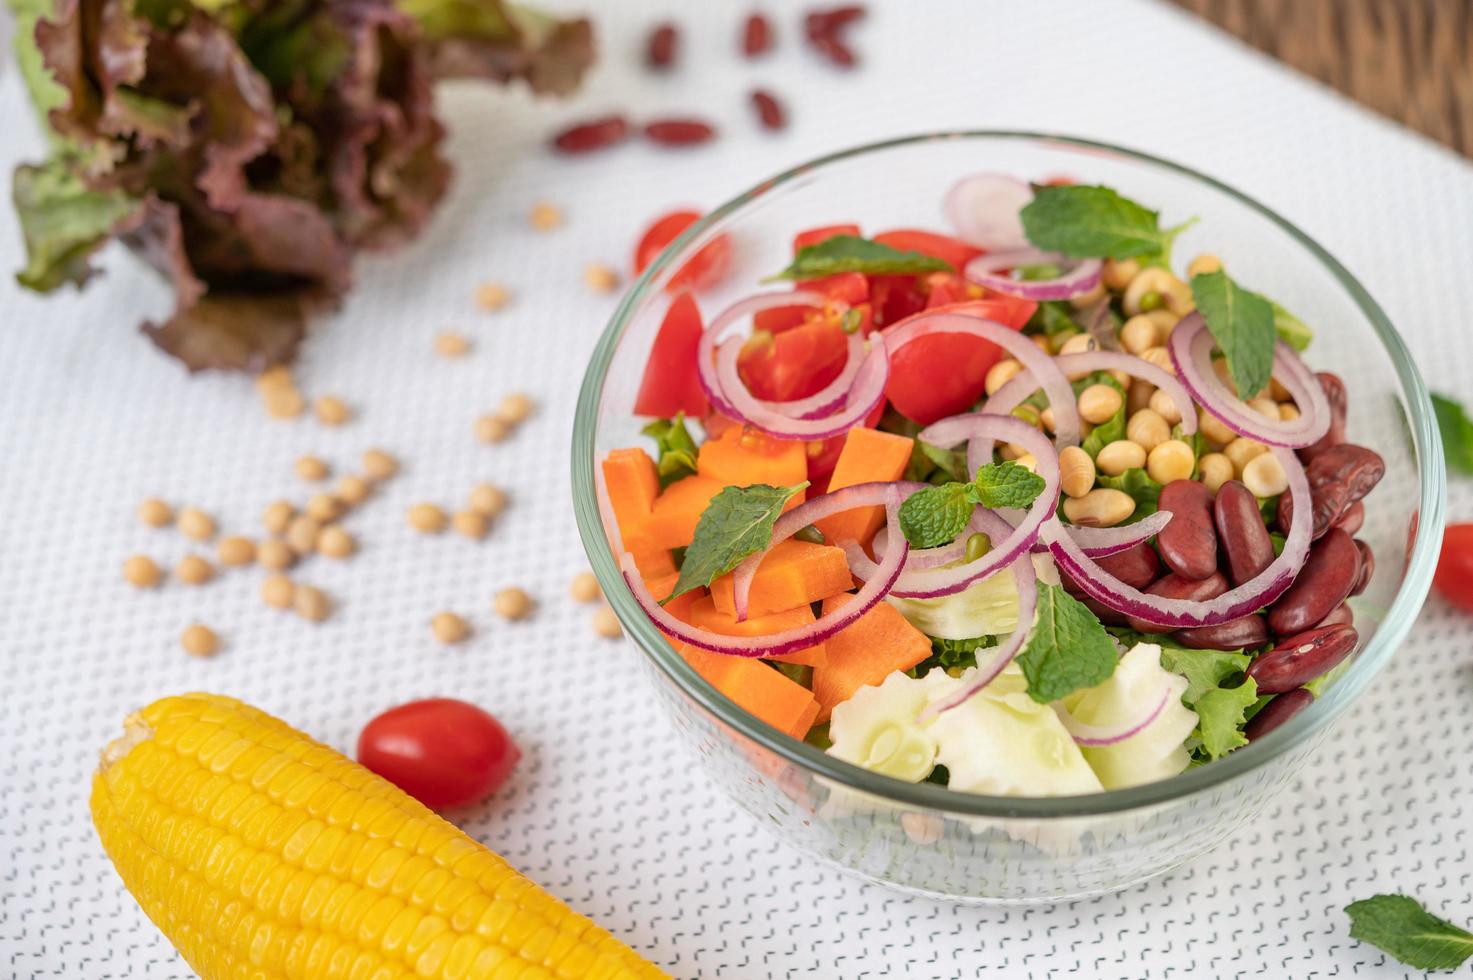 salade de fruits et légumes frais dans un bol en verre photo